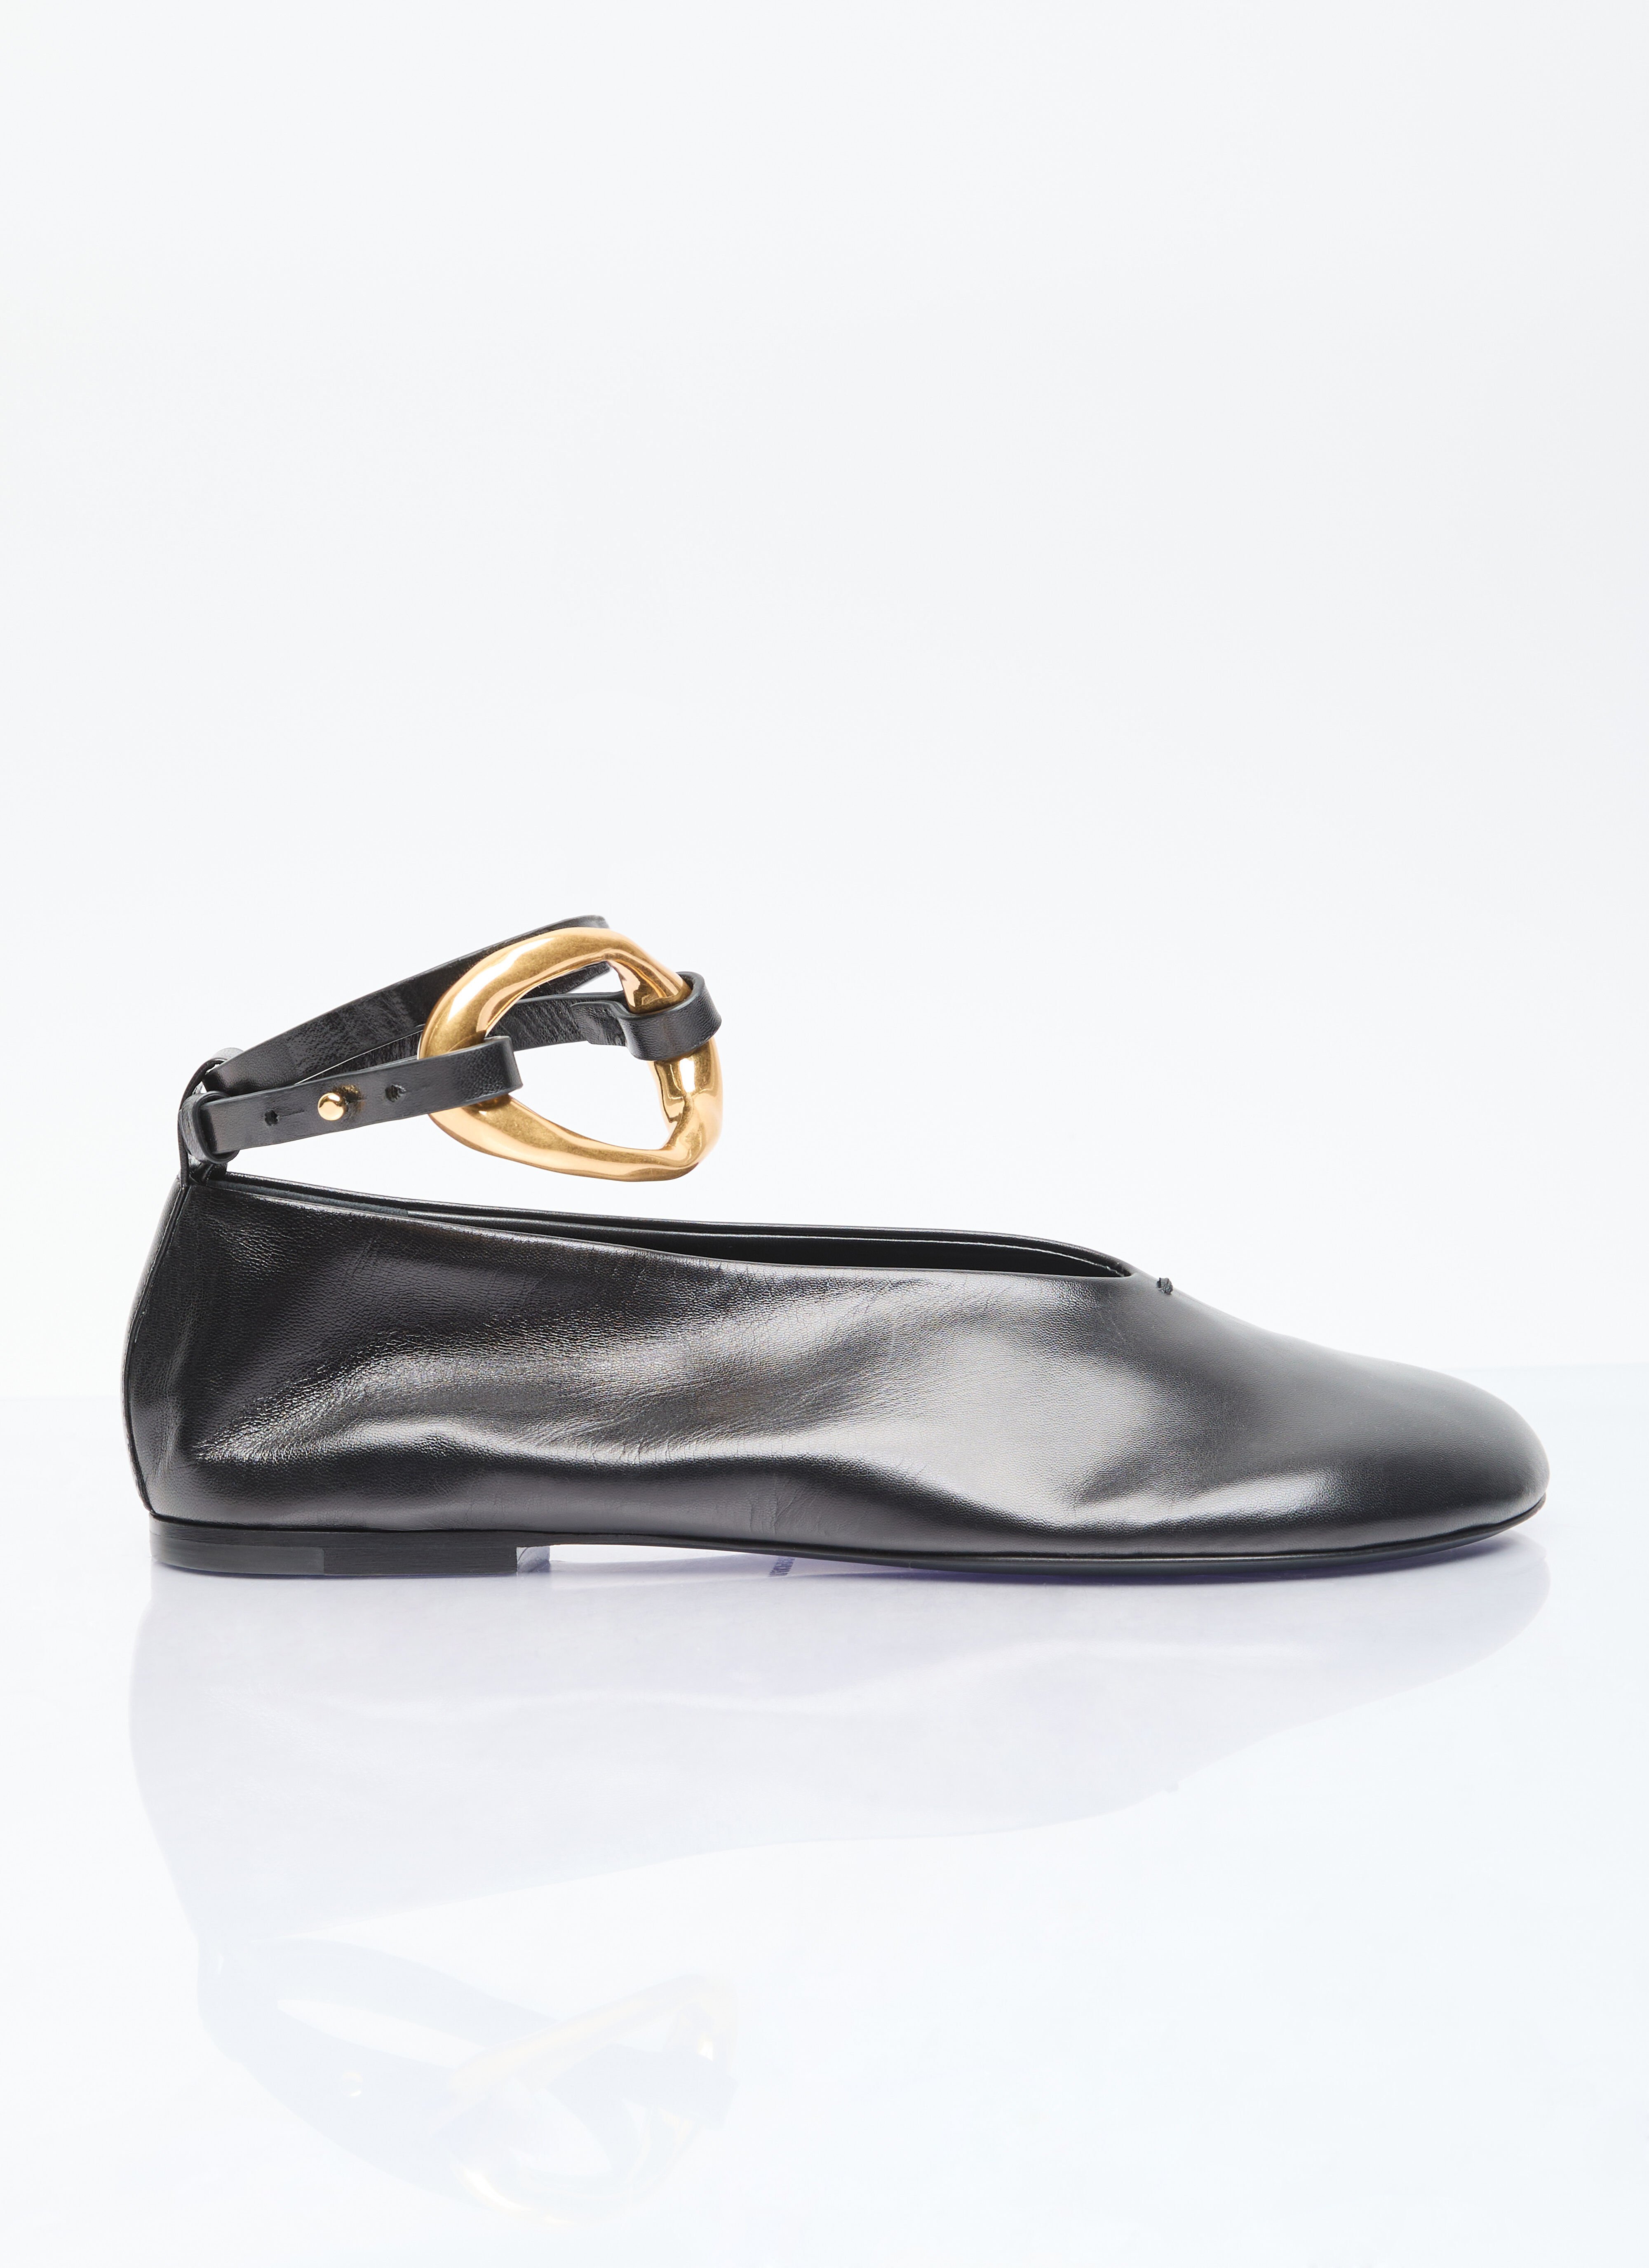 Gucci 皮革芭蕾平底鞋 黑色 guc0255061